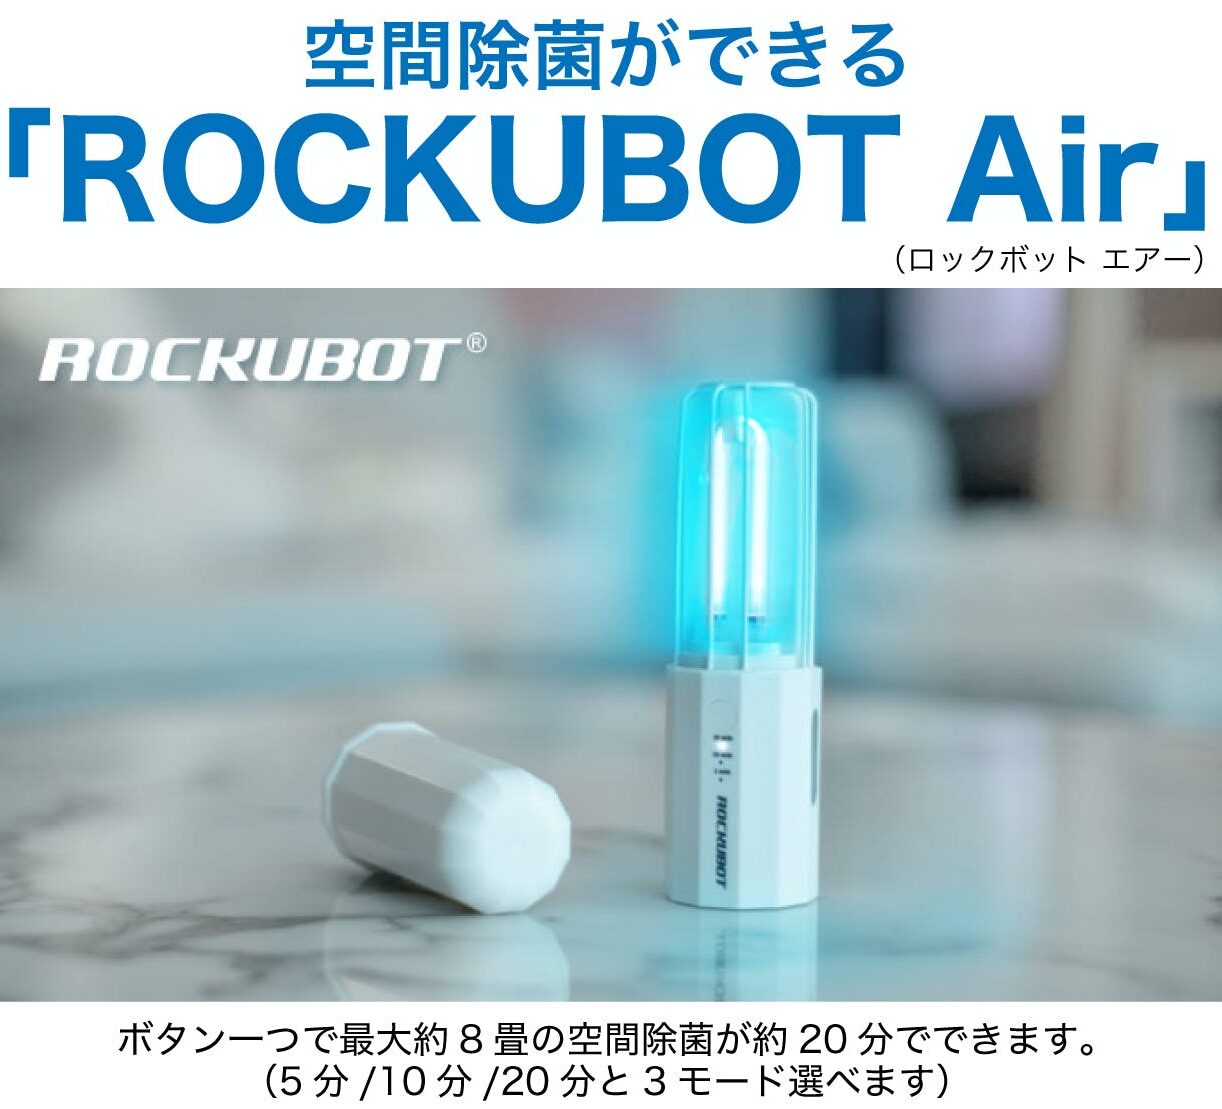 新商品ROKUBOTAir発売開始しました | ROCKUBOT JAPAN 公式HP｜全自動除 